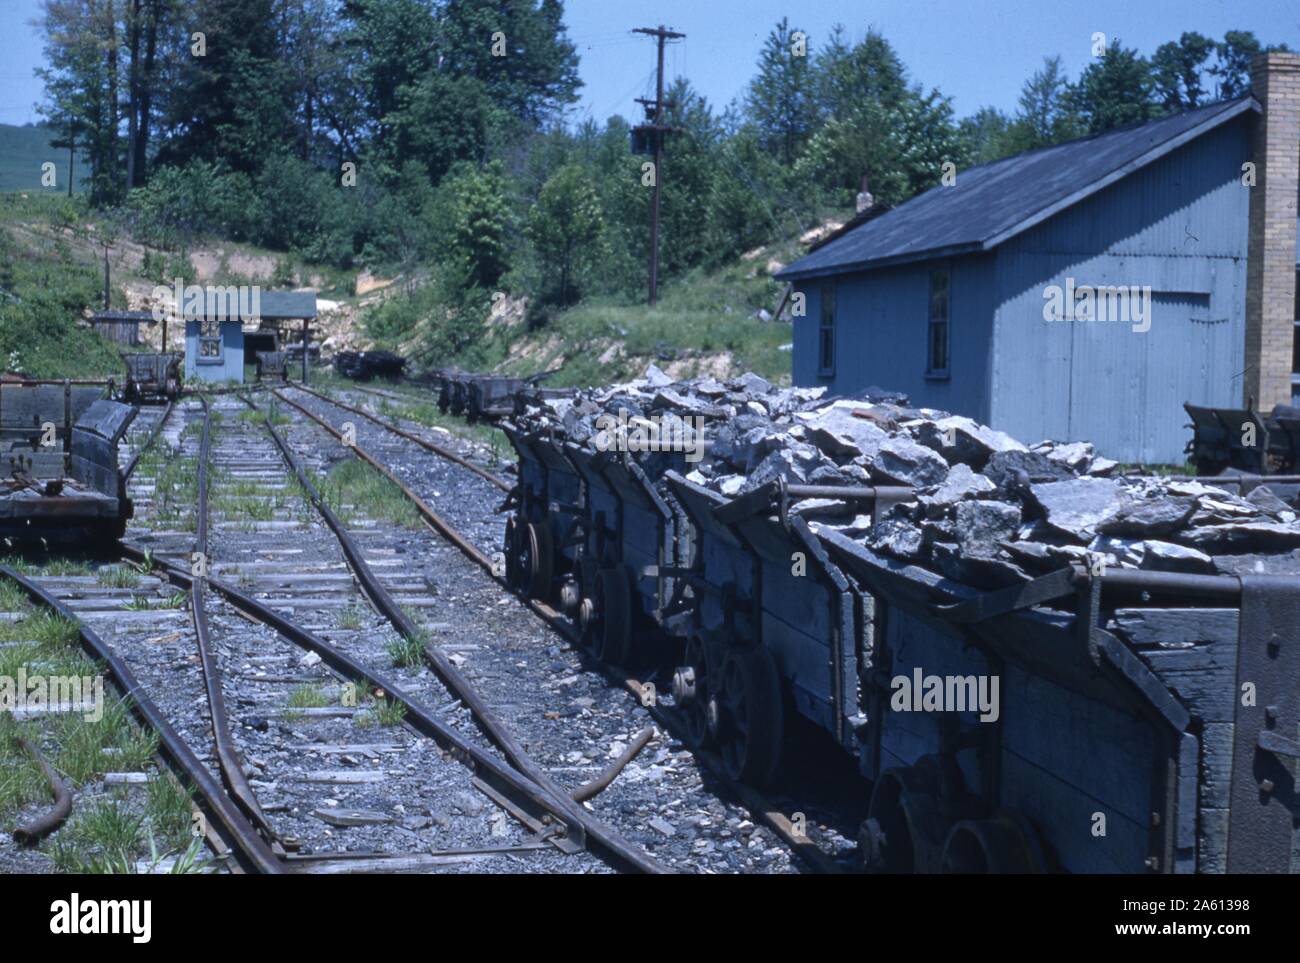 Plusieurs wagons de fret remplis de roches cassées s'assoient sur une voie d'évitement sur des voies ferrées près de bâtiments industriels, 1965. () Banque D'Images